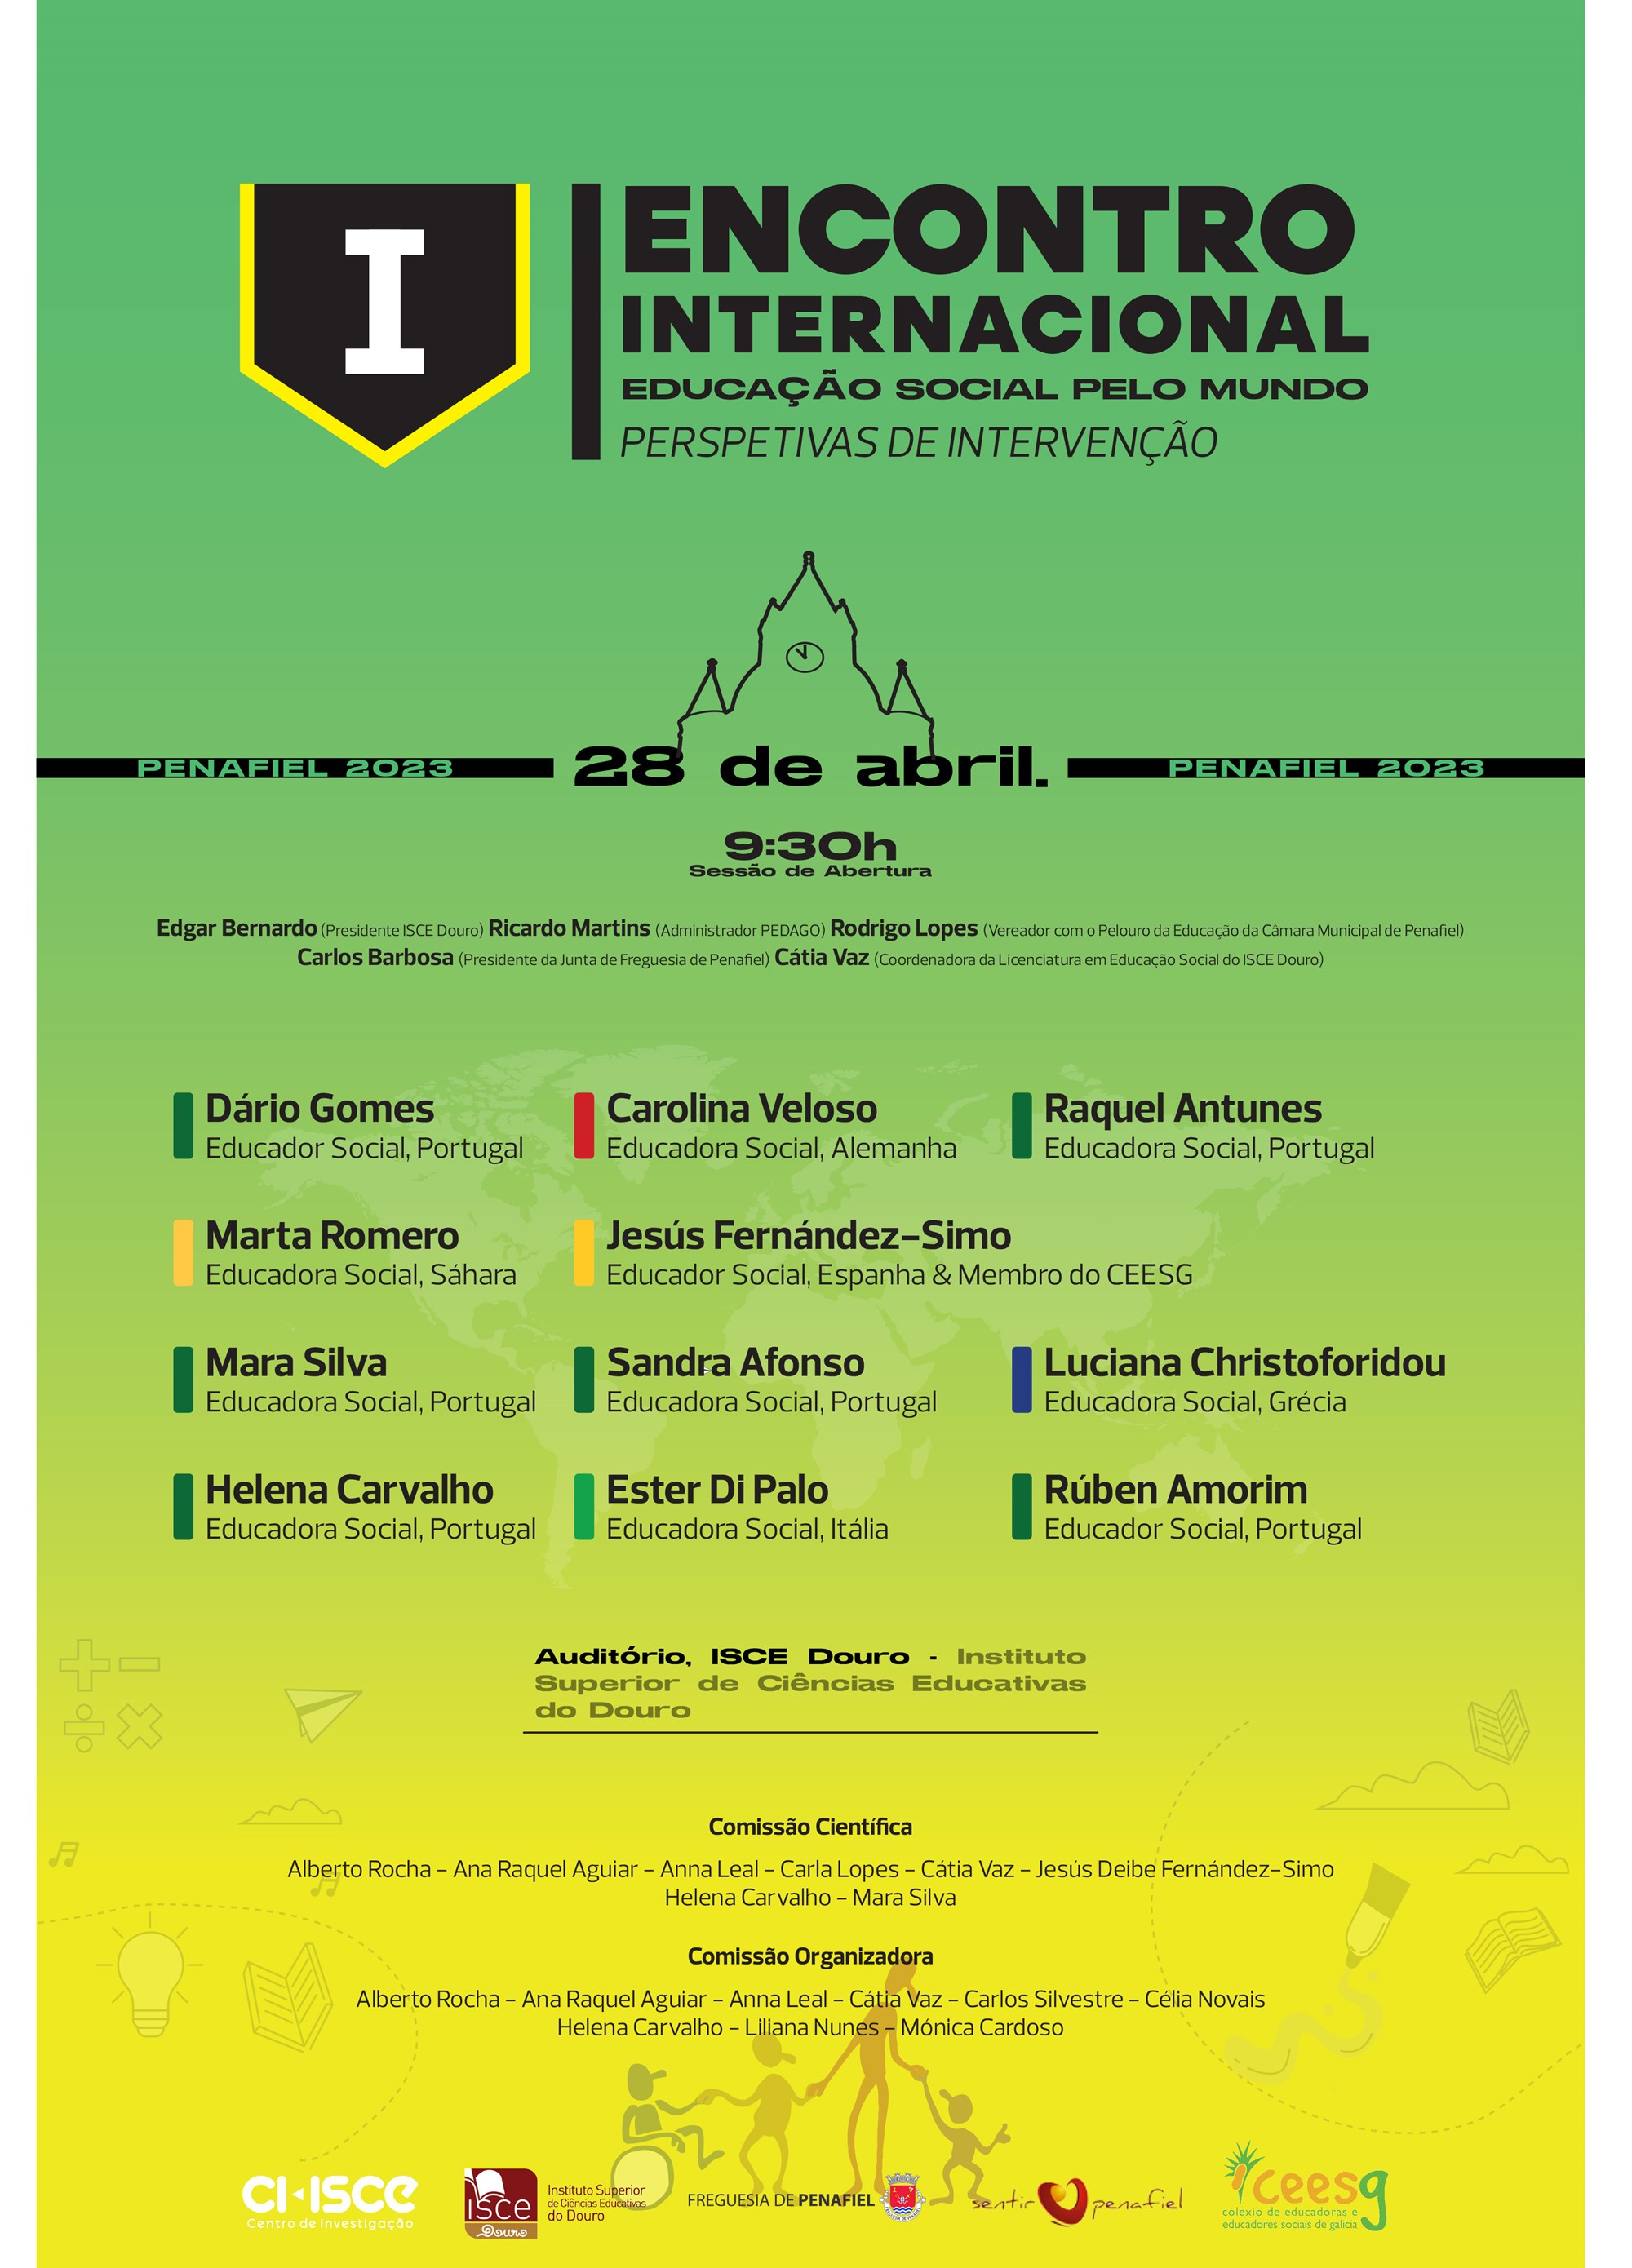 ISCE Douro organiza o I Encontro Internacional Educadores Sociais pelo Mundo - Perspetivas de Intervenção